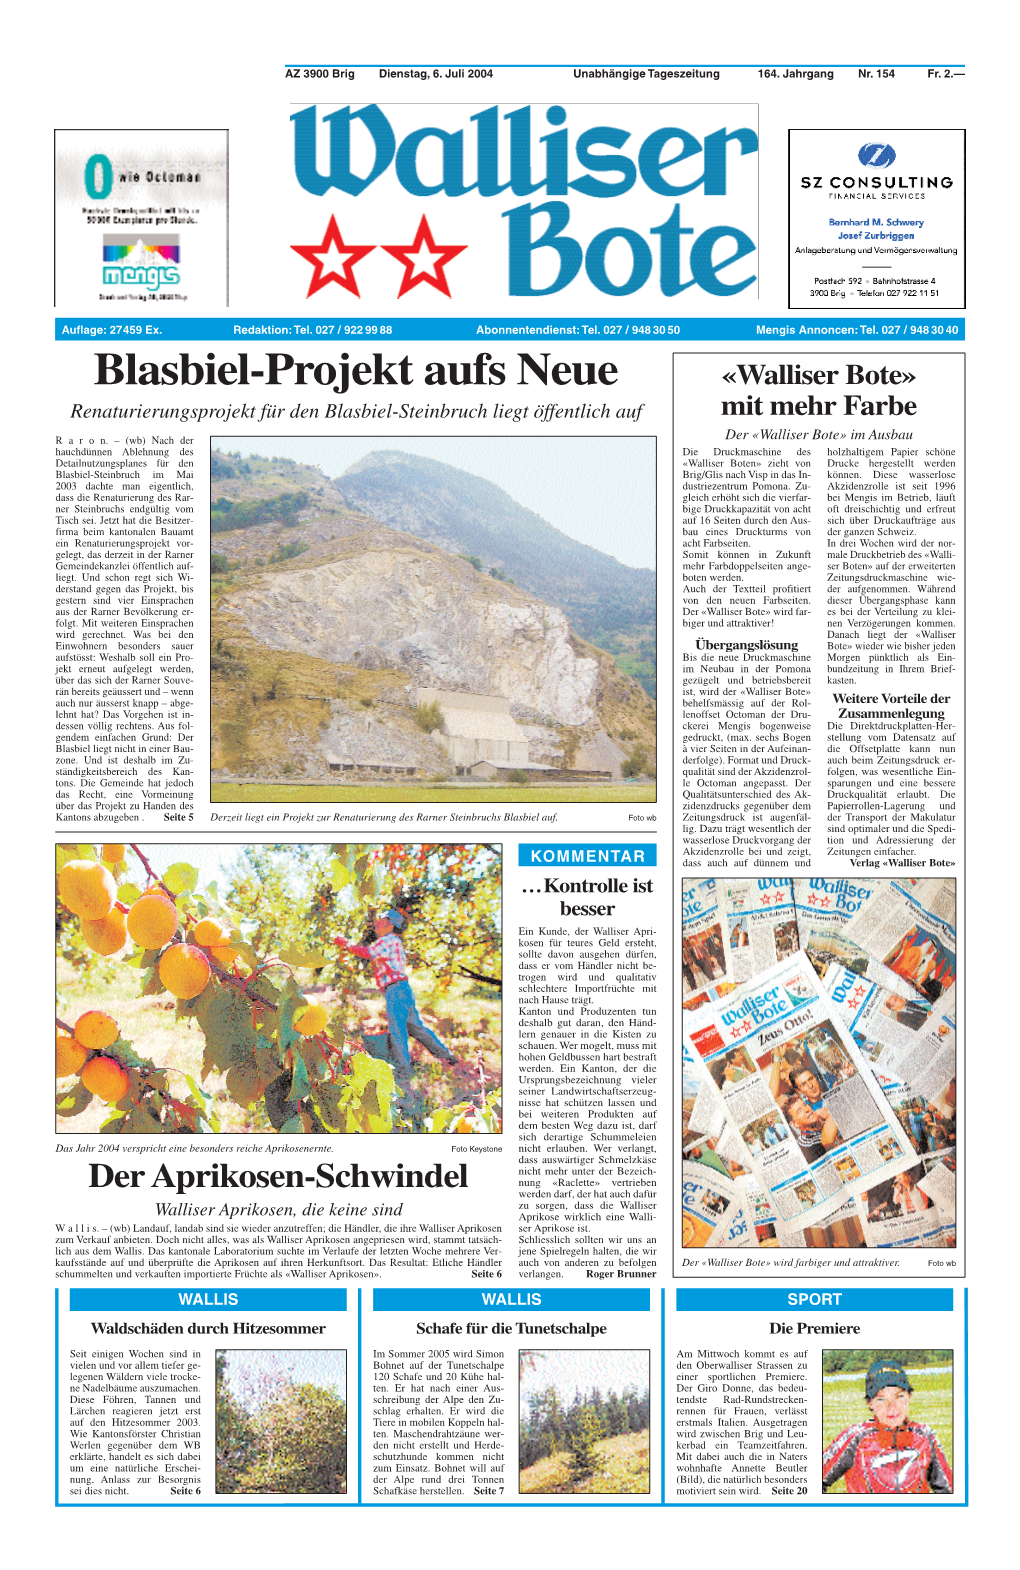 Blasbiel-Projekt Aufs Neue «Walliser Bote» Renaturierungsprojekt Für Den Blasbiel-Steinbruch Liegt Öffentlich Auf Mit Mehr Farbe